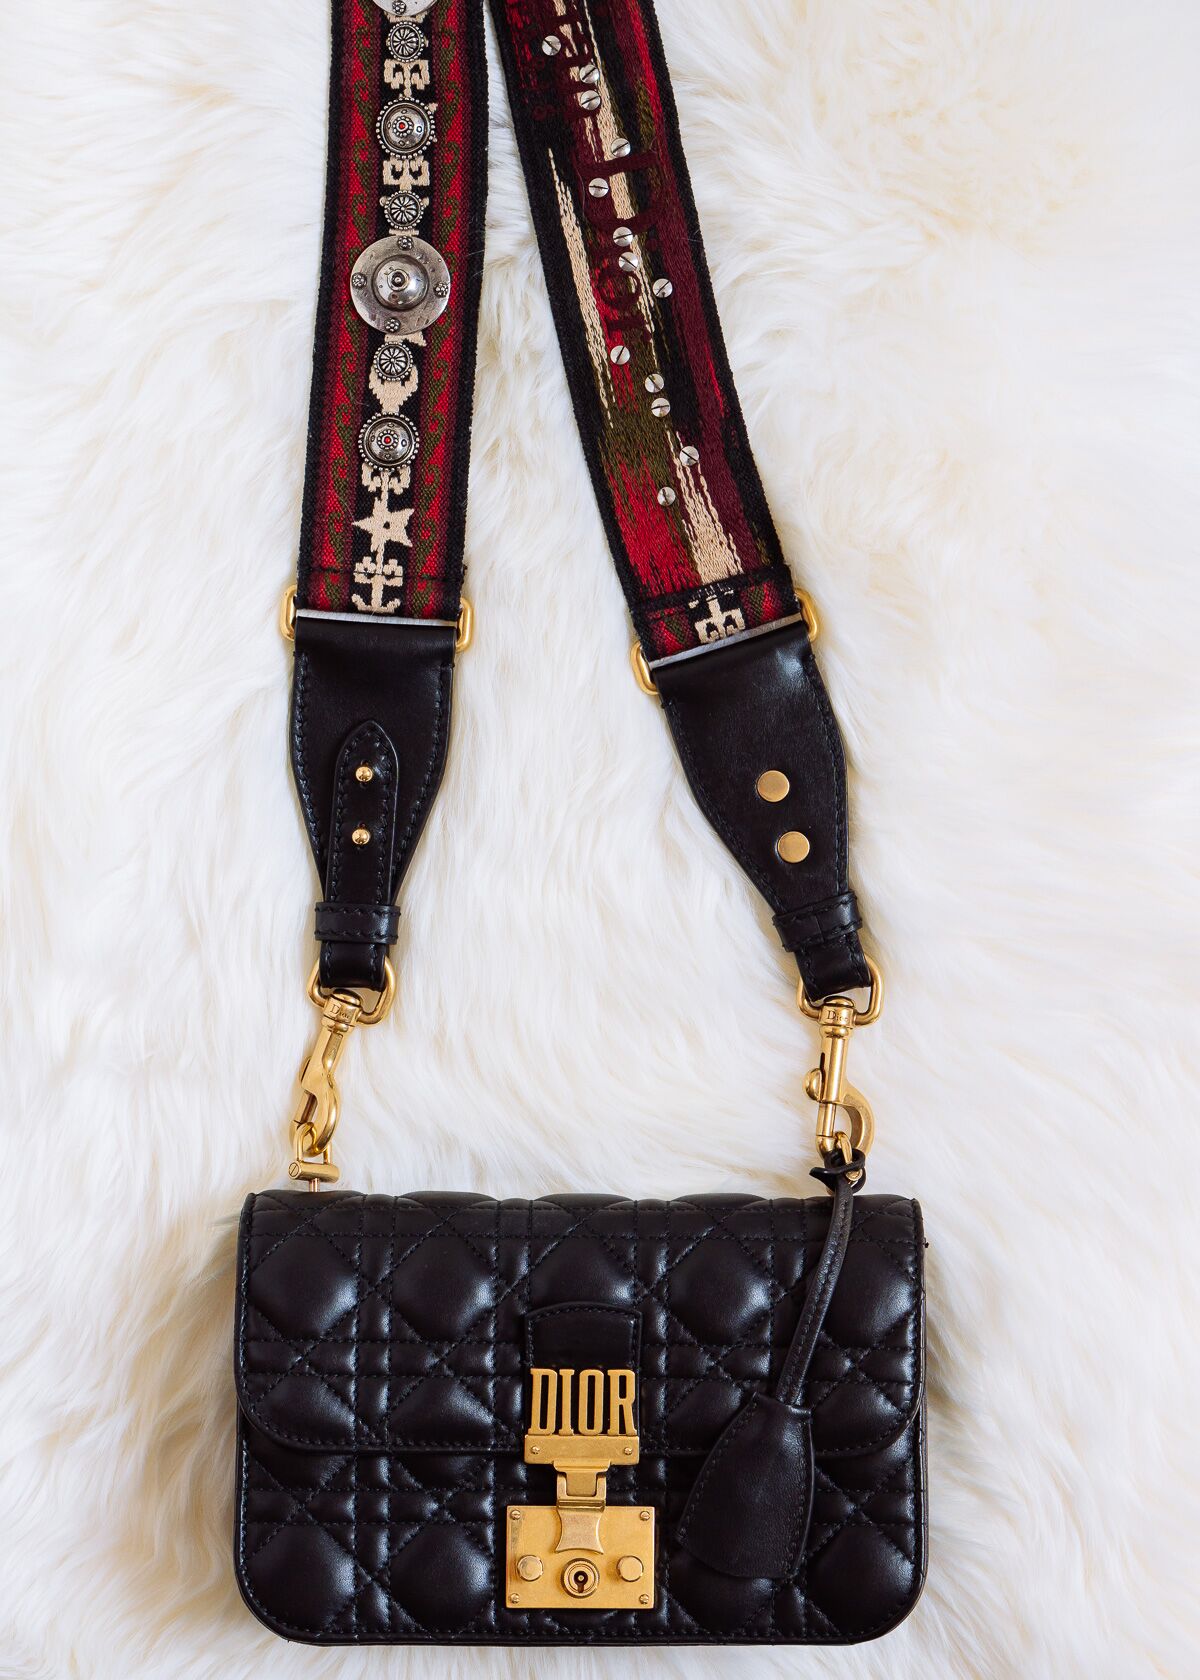 Up Close with the Dior Addict Bag - PurseBlog